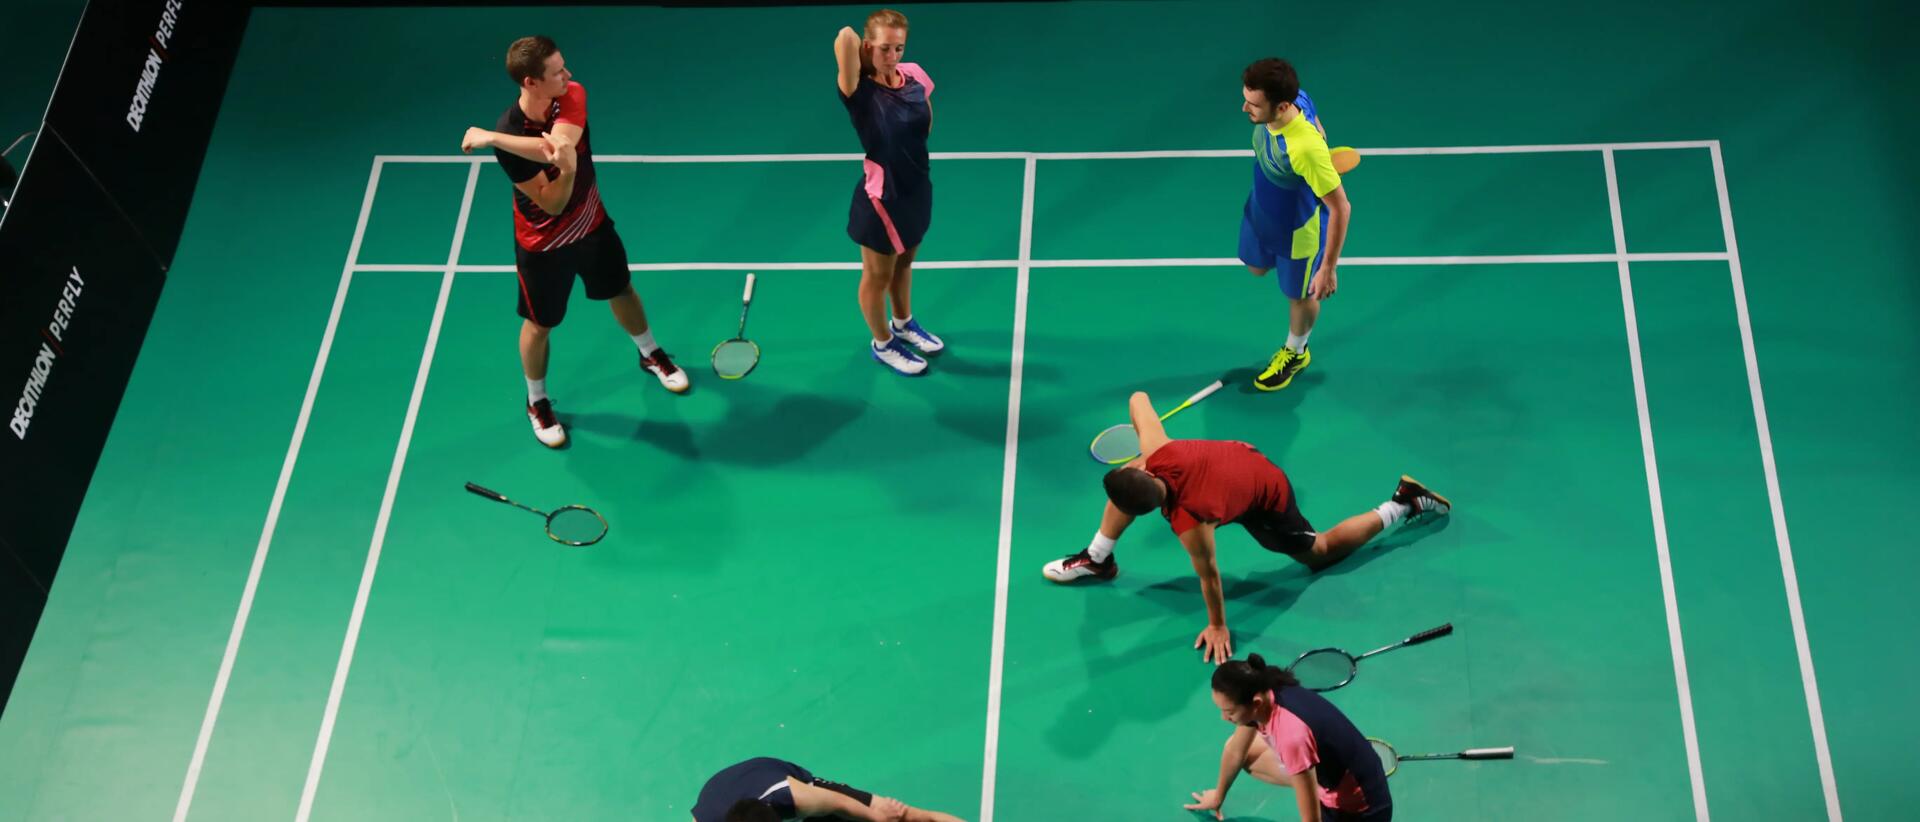 zawodnicy rozgrzewający się na boisku do badmintona